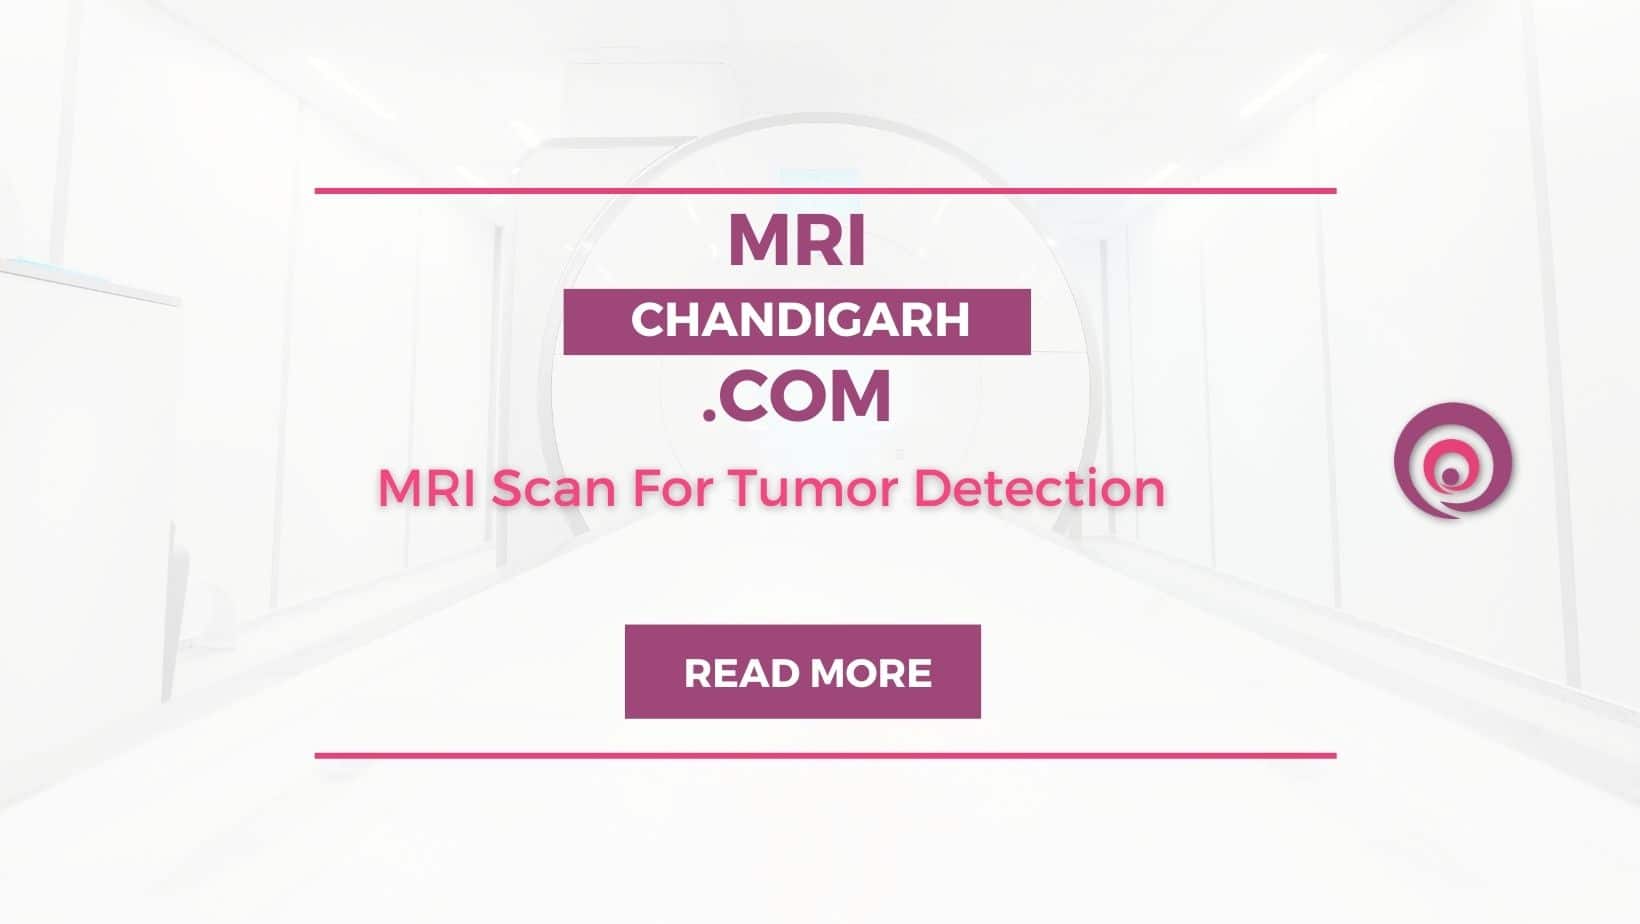 MRI Scan For Tumor Detection